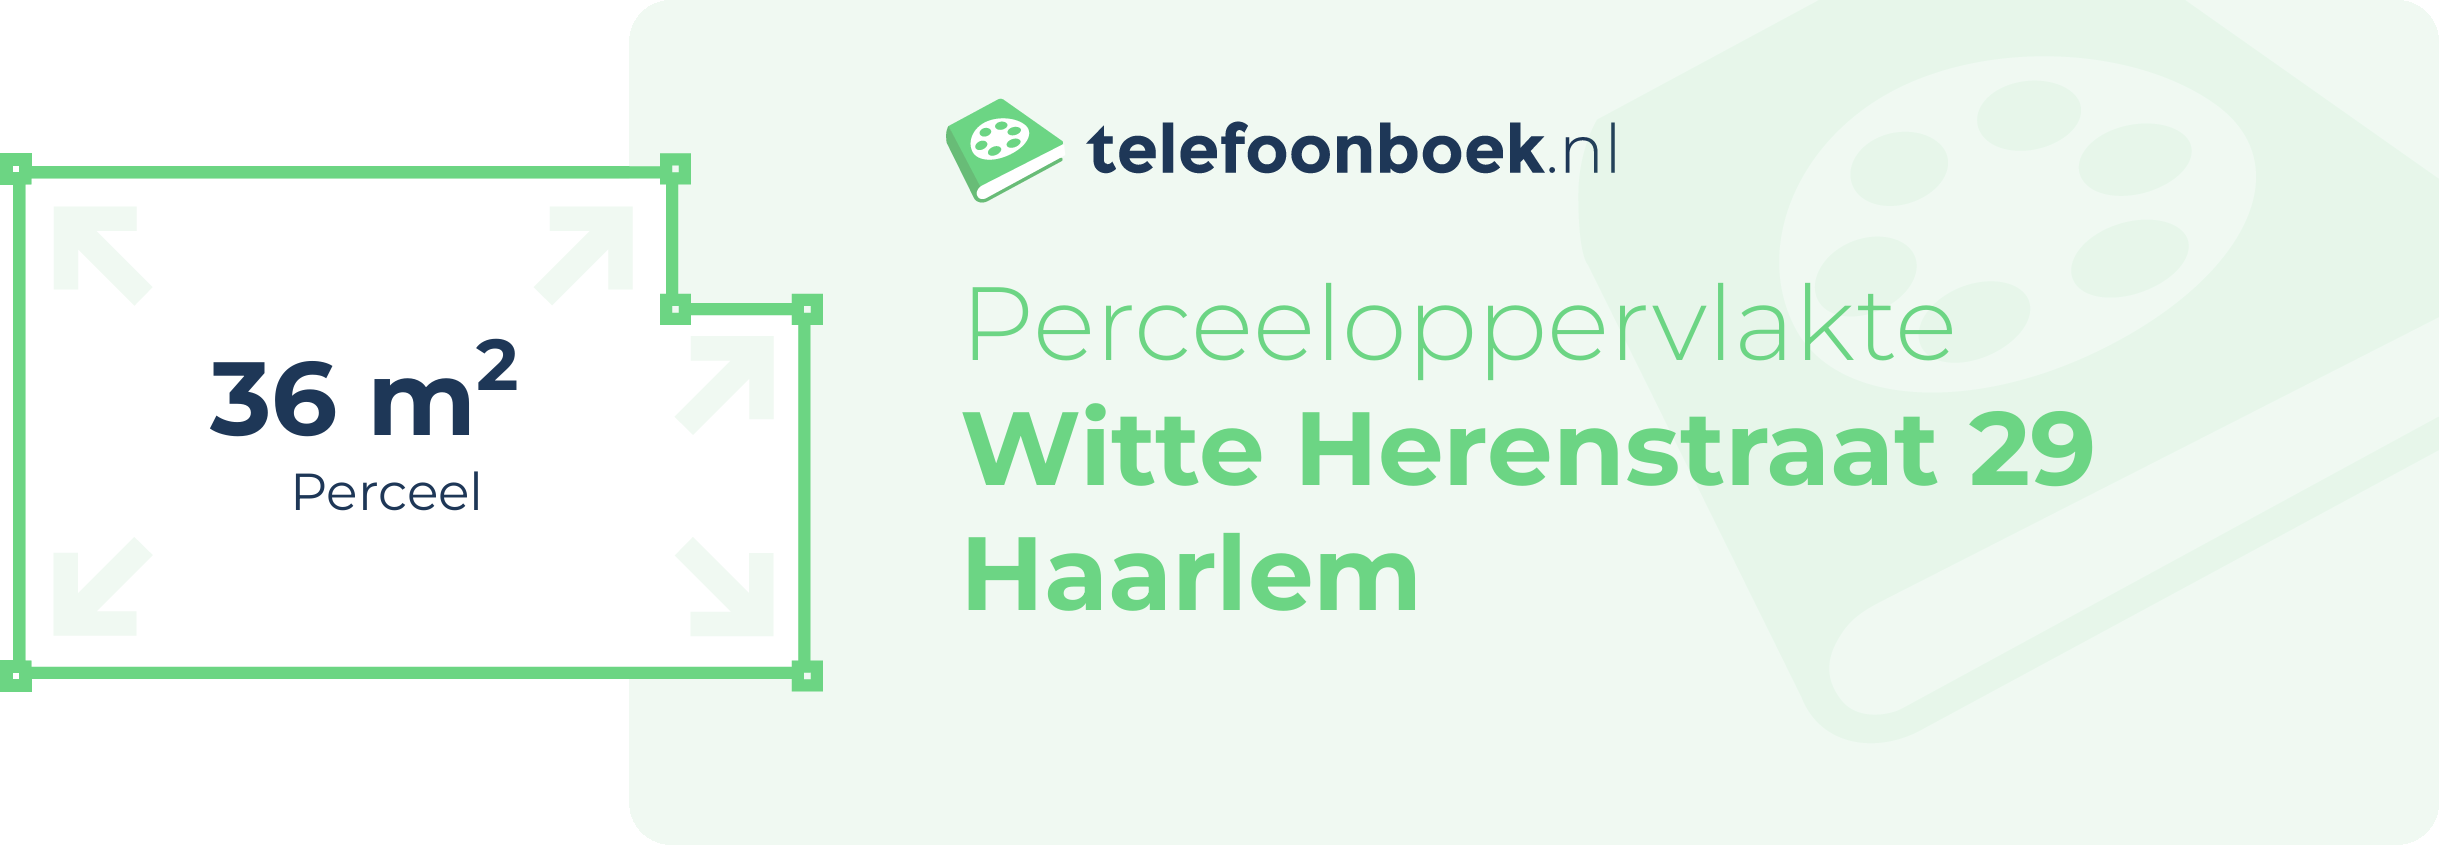 Perceeloppervlakte Witte Herenstraat 29 Haarlem